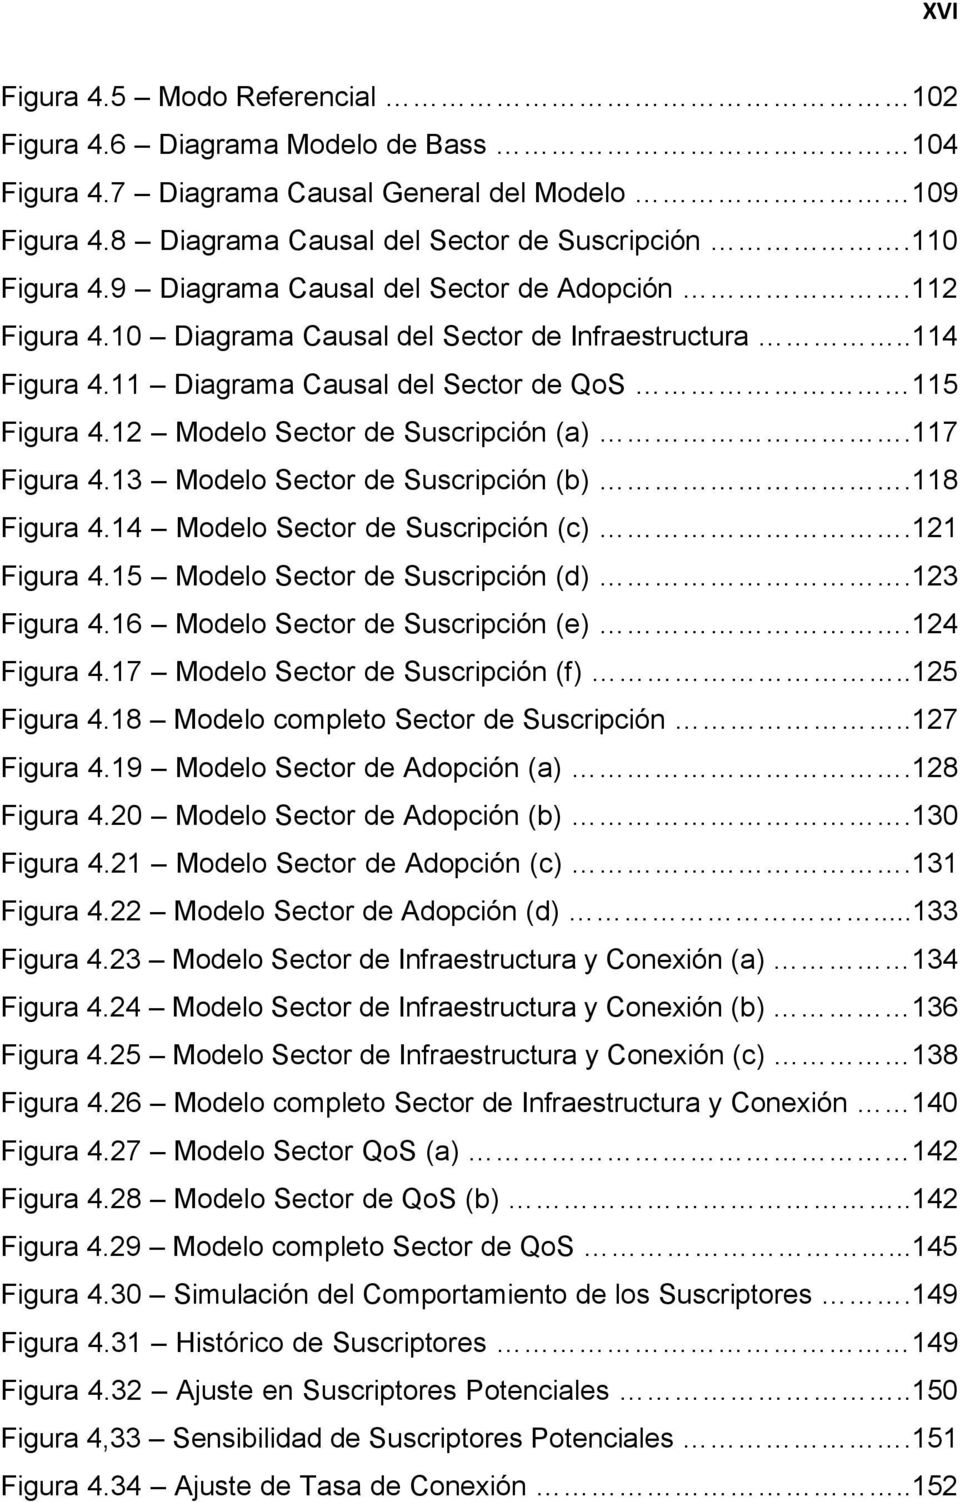 12 Modelo Sector de Suscripción (a).117 Figura 4.13 Modelo Sector de Suscripción (b).118 Figura 4.14 Modelo Sector de Suscripción (c).121 Figura 4.15 Modelo Sector de Suscripción (d).123 Figura 4.